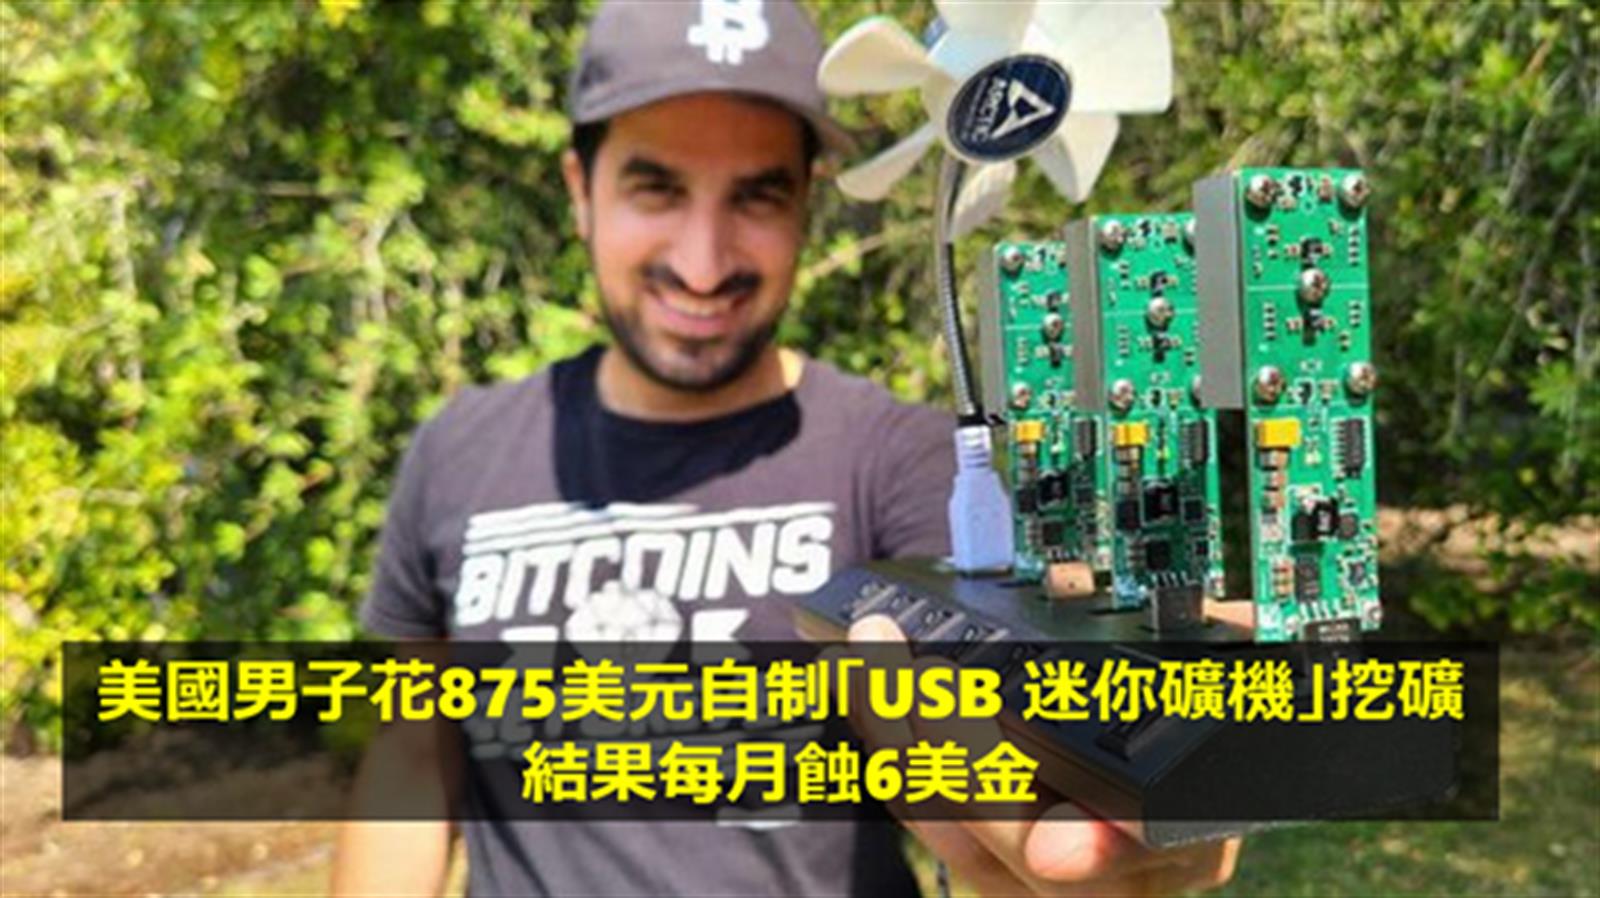 美國男子花875美元自制「USB 迷你礦機」挖礦   結果每月蝕6美金